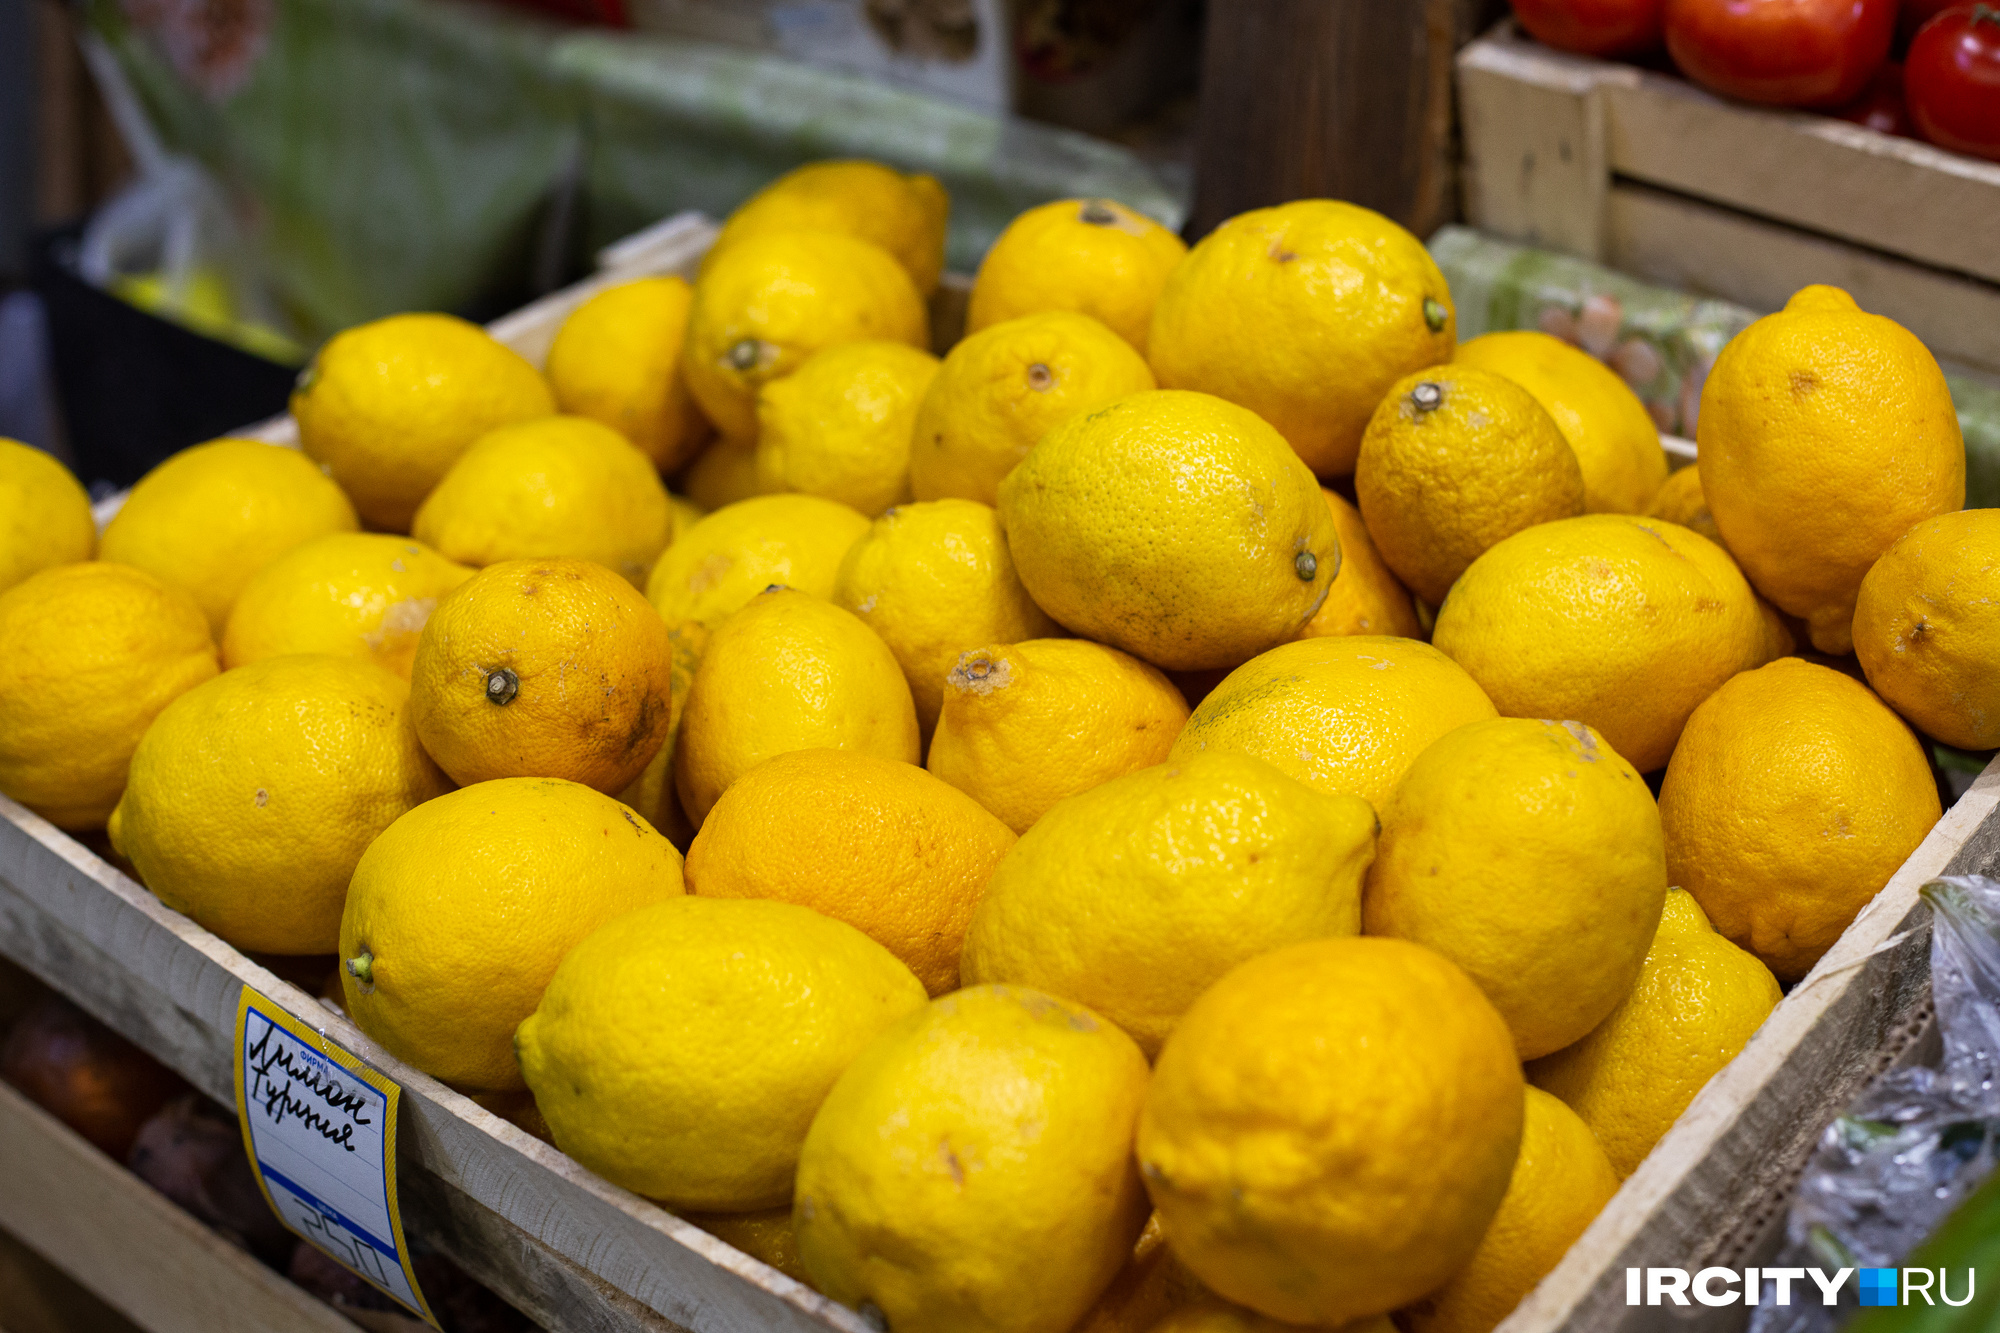 Лимон из косточки: есть ли шанс получить плоды на подоконнике?